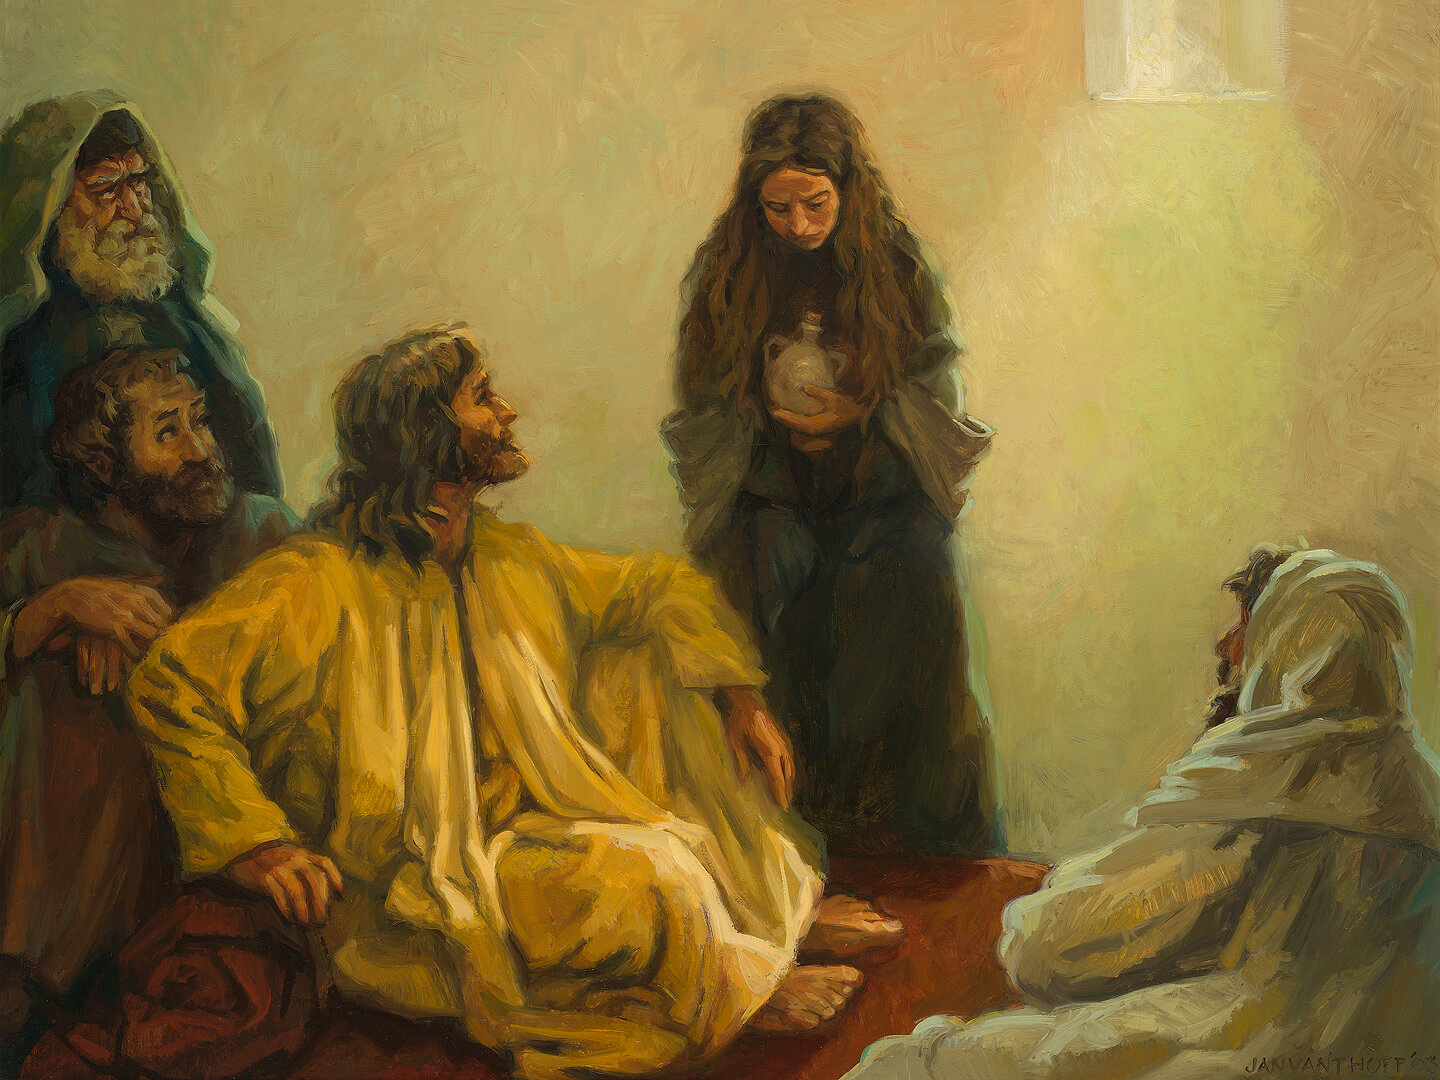 Jezus Voeten Gezalfd Door Een Zondares - Gospelimages